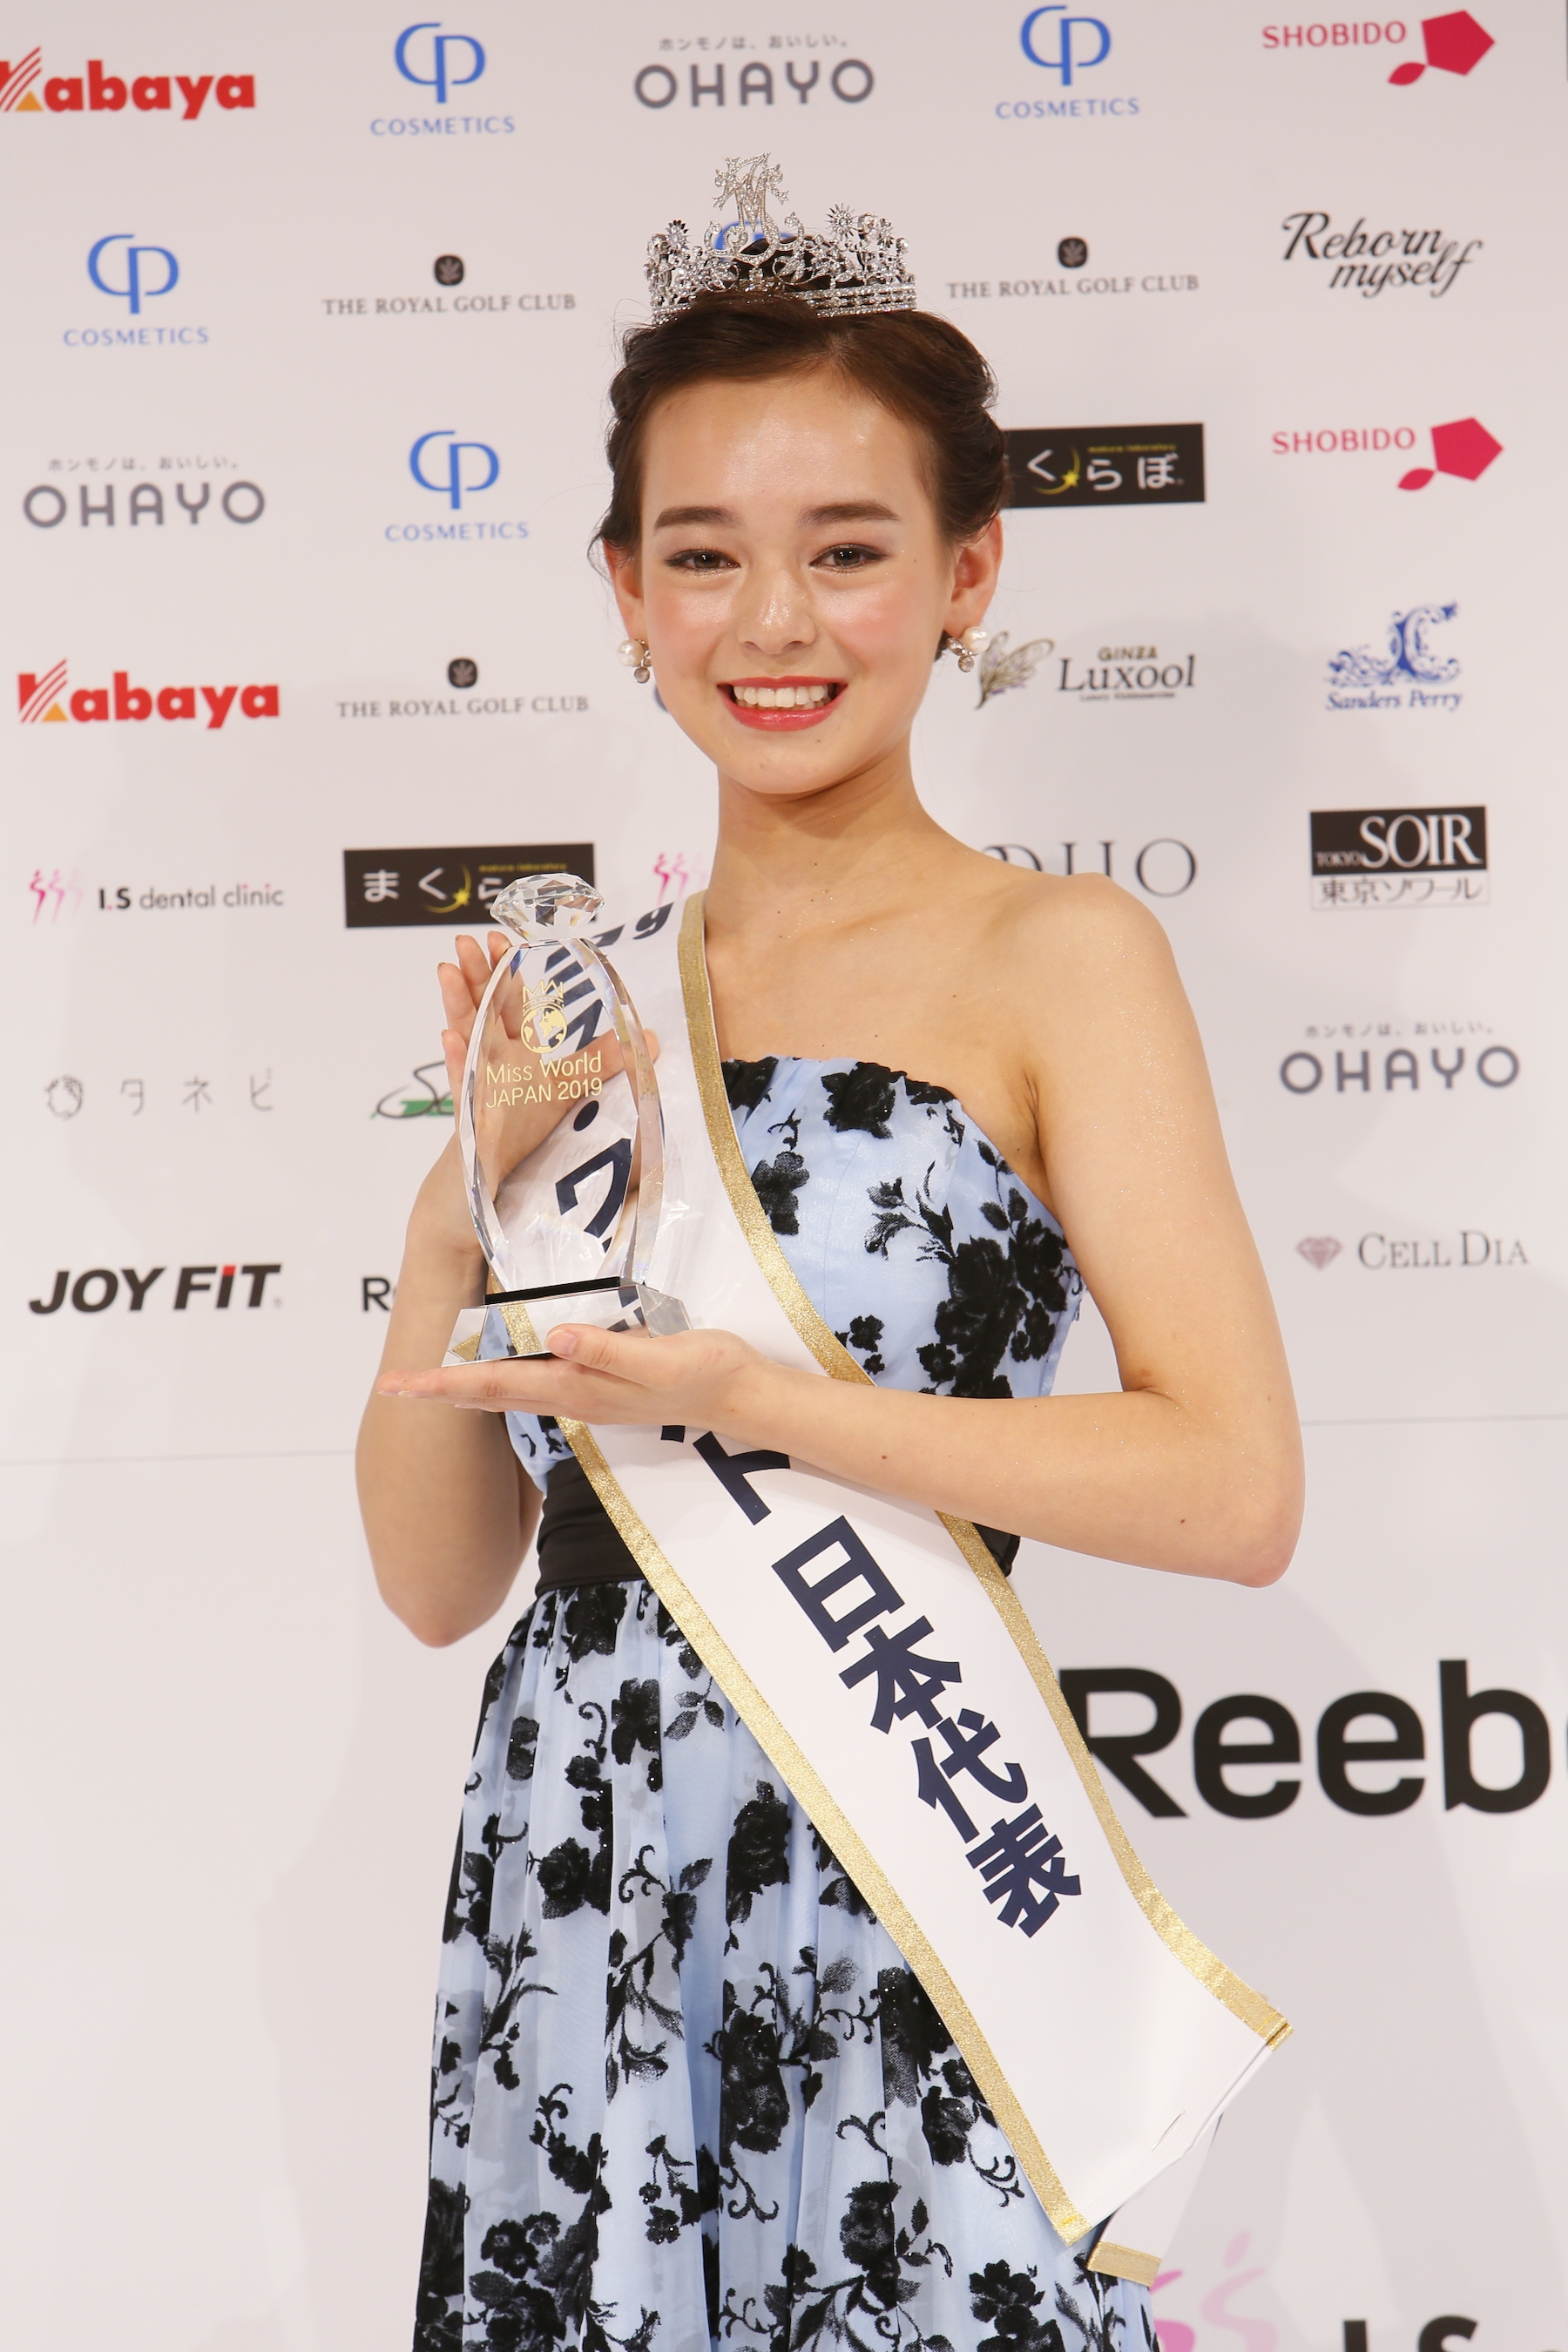 世良マリカ(16歳)ミス・ワールド2019 日本代表